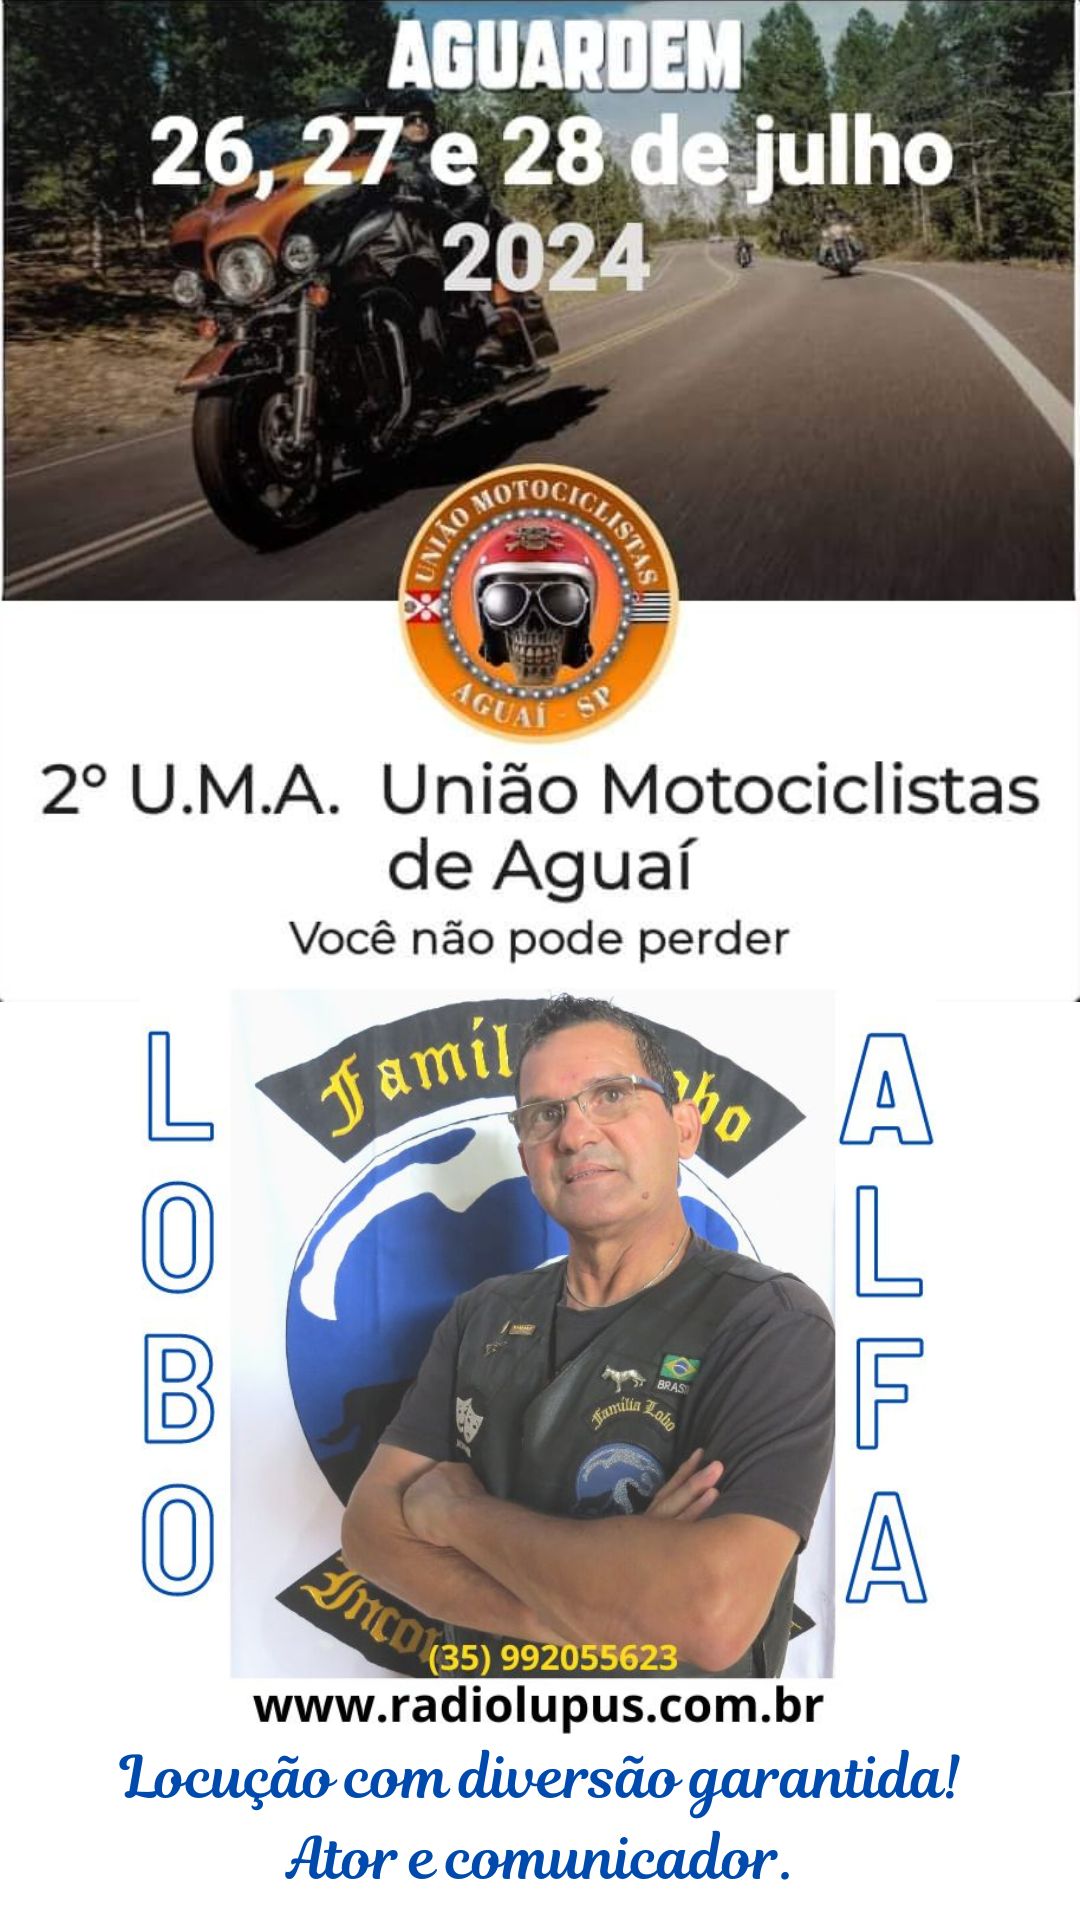 2° U.M.A União Motociclistas de Aguaí SP